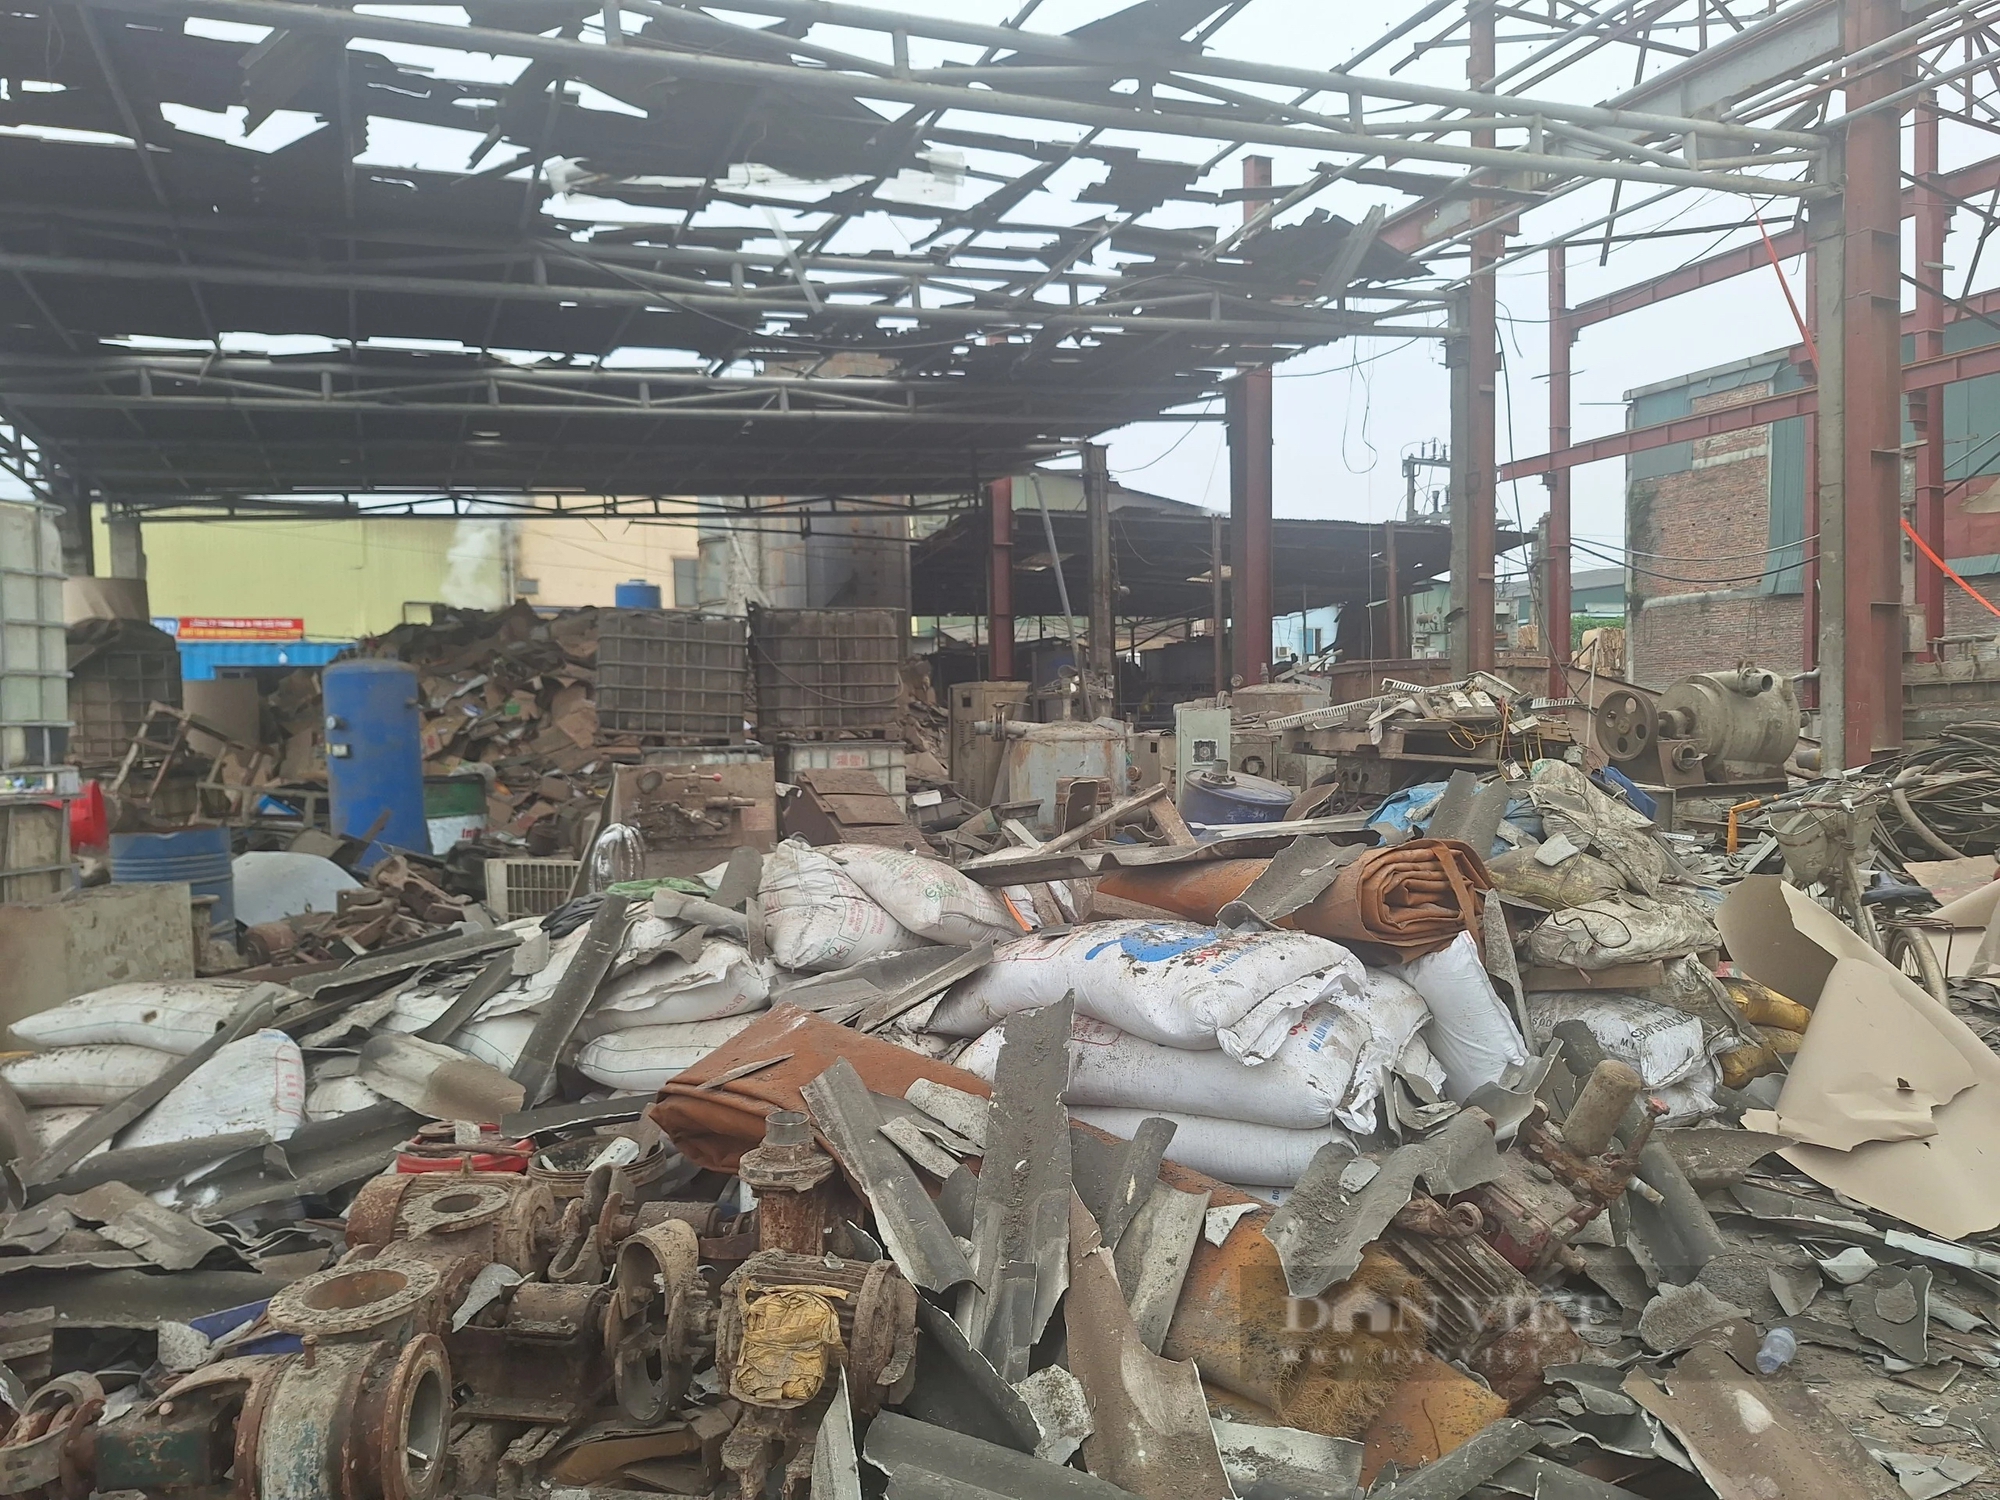 Hiện trường tan hoang sau vụ nổ khiến 1 người tử vong, 2 người bị thương tại khu công nghiệp ở Bắc Ninh- Ảnh 7.